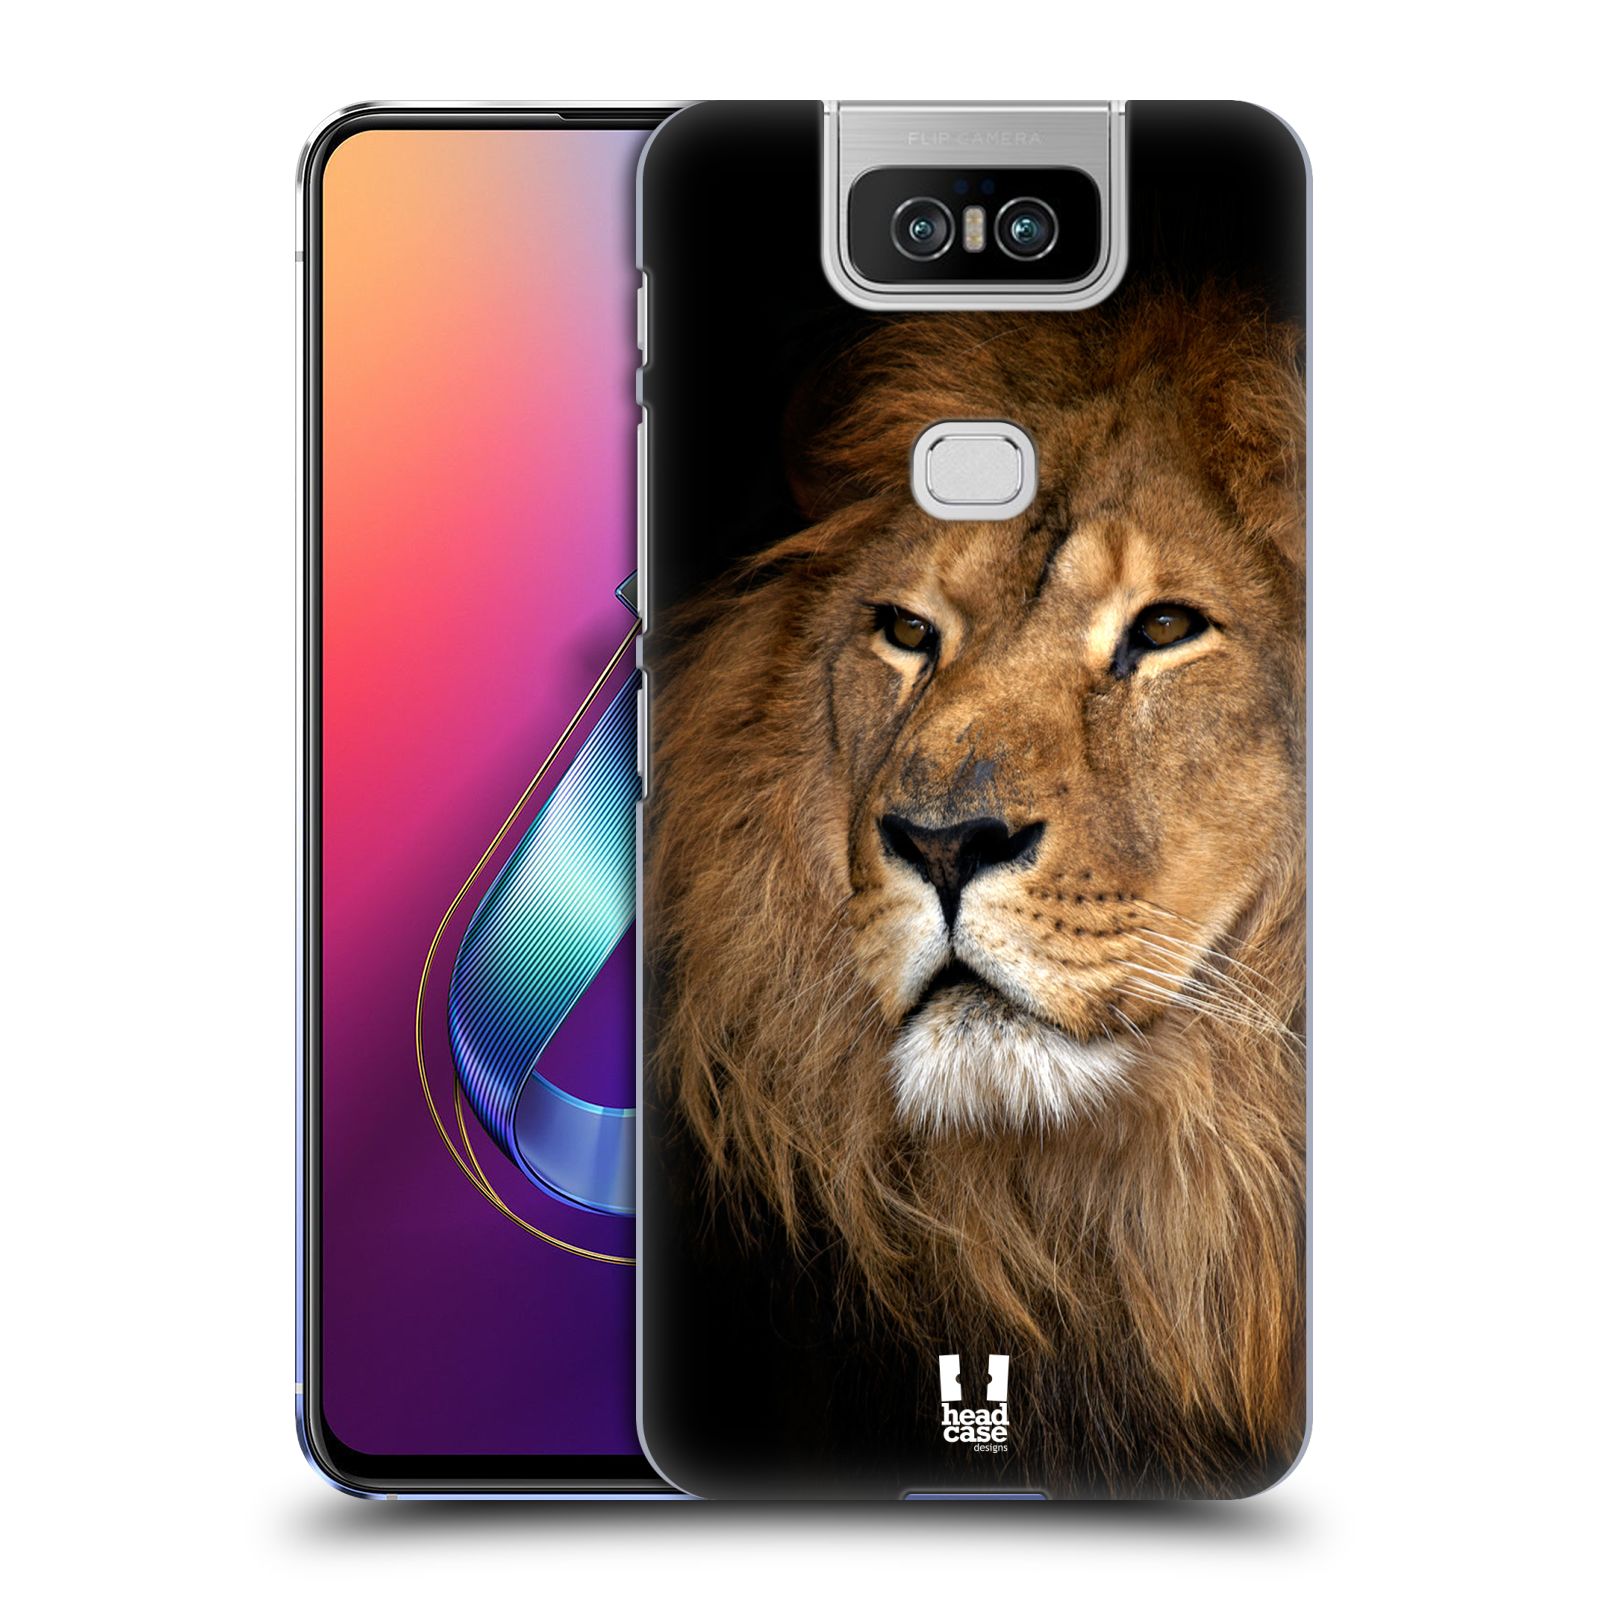 Zadní obal pro mobil Asus Zenfone 6 ZS630KL - HEAD CASE - Svět zvířat král zvířat Lev